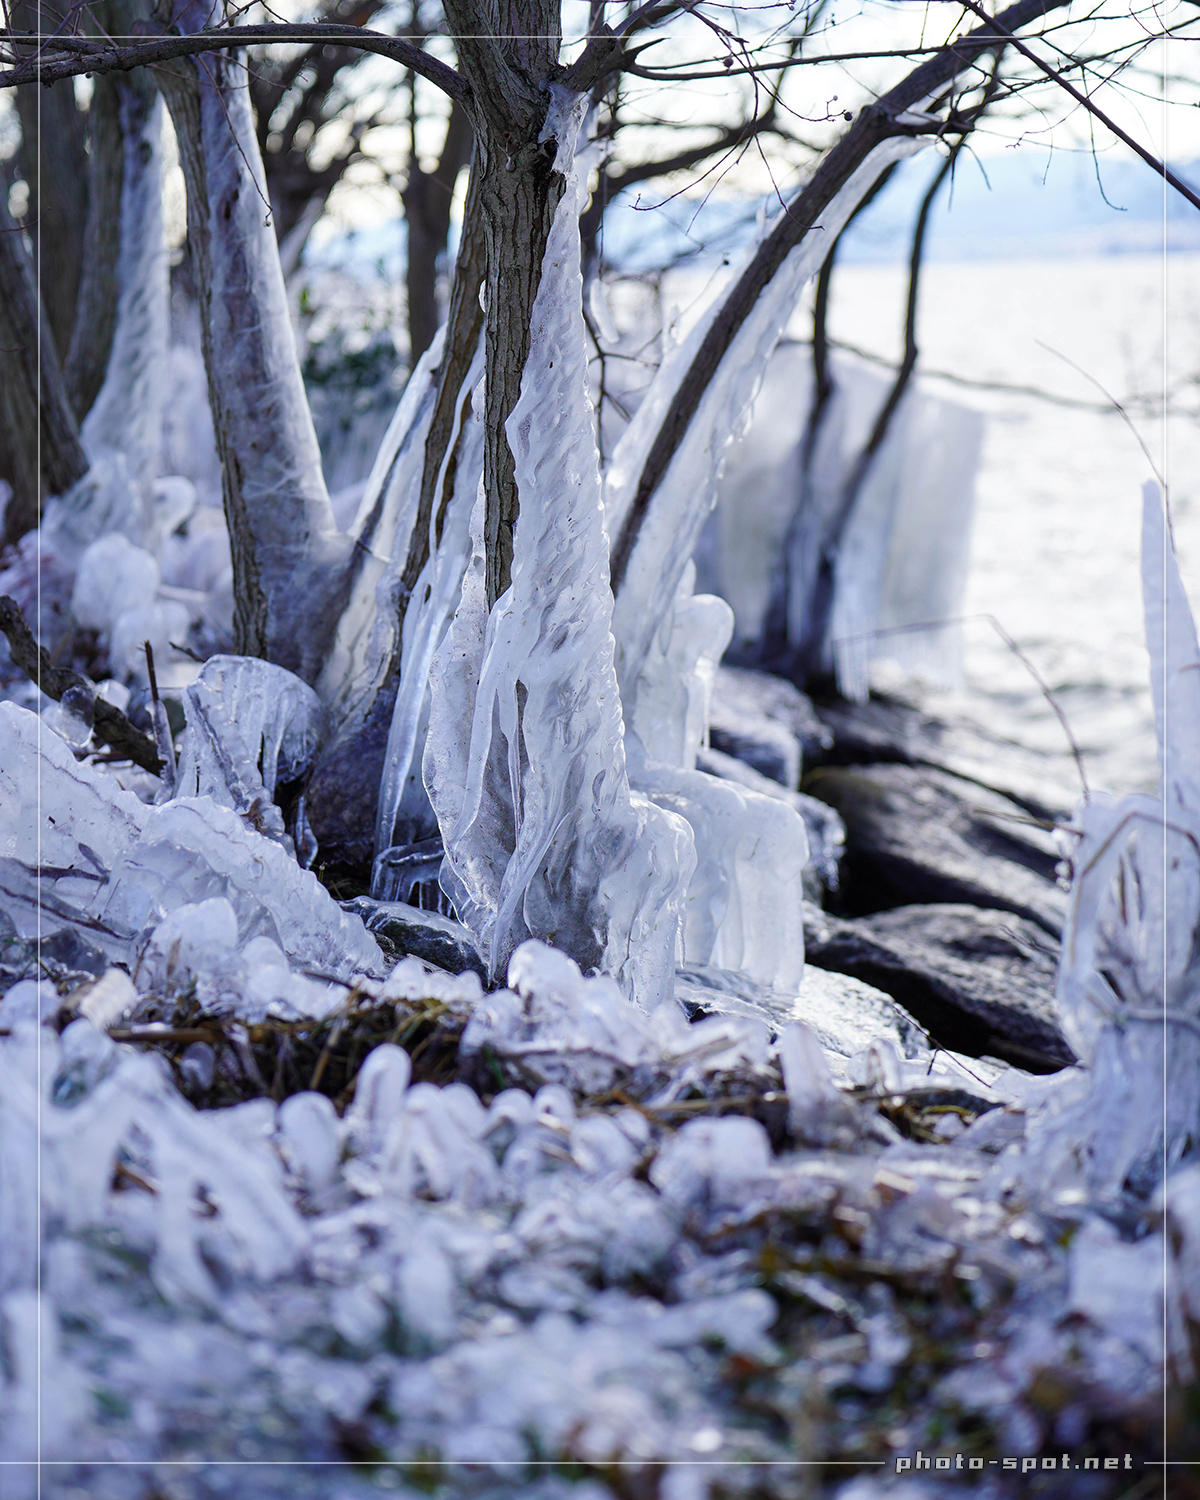 琵琶湖に氷のアート「しぶき氷」氷でコーティングされた枝